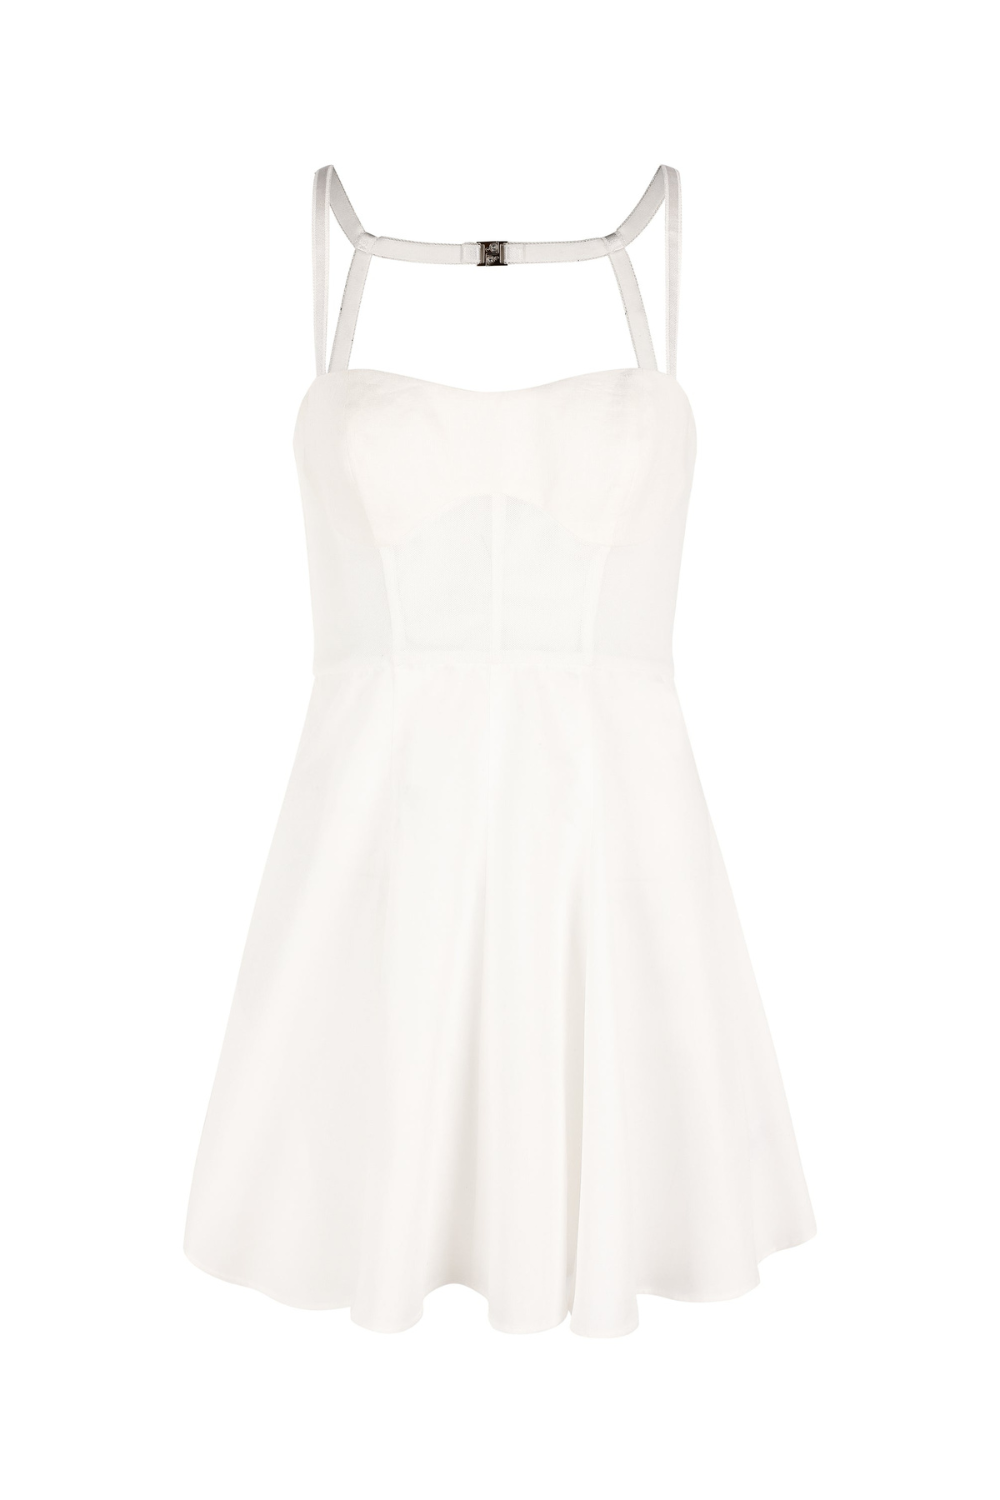 MINI SLOANE DRESS - WHITE